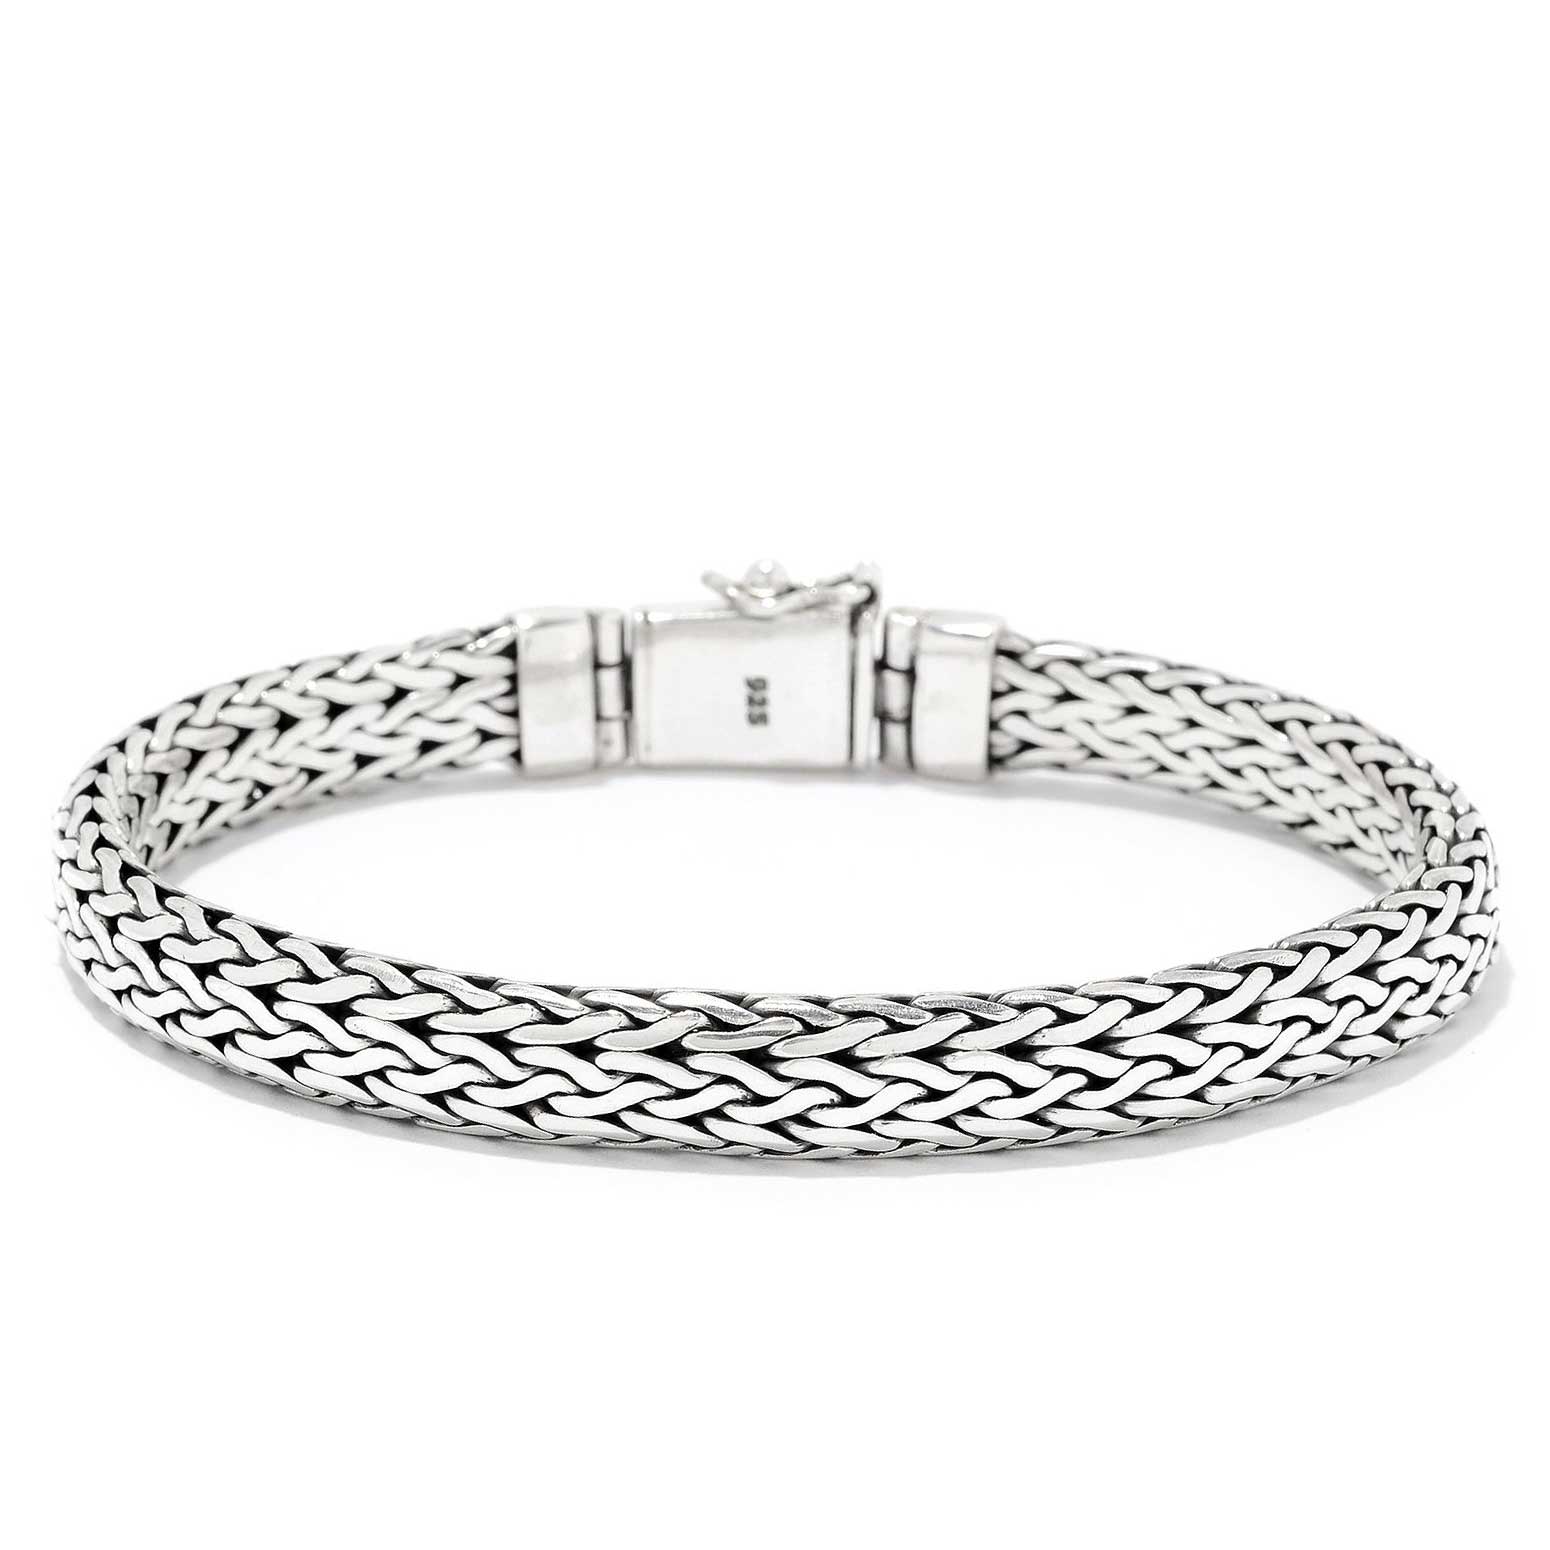 Sterling silver woven bracelet  8.5"